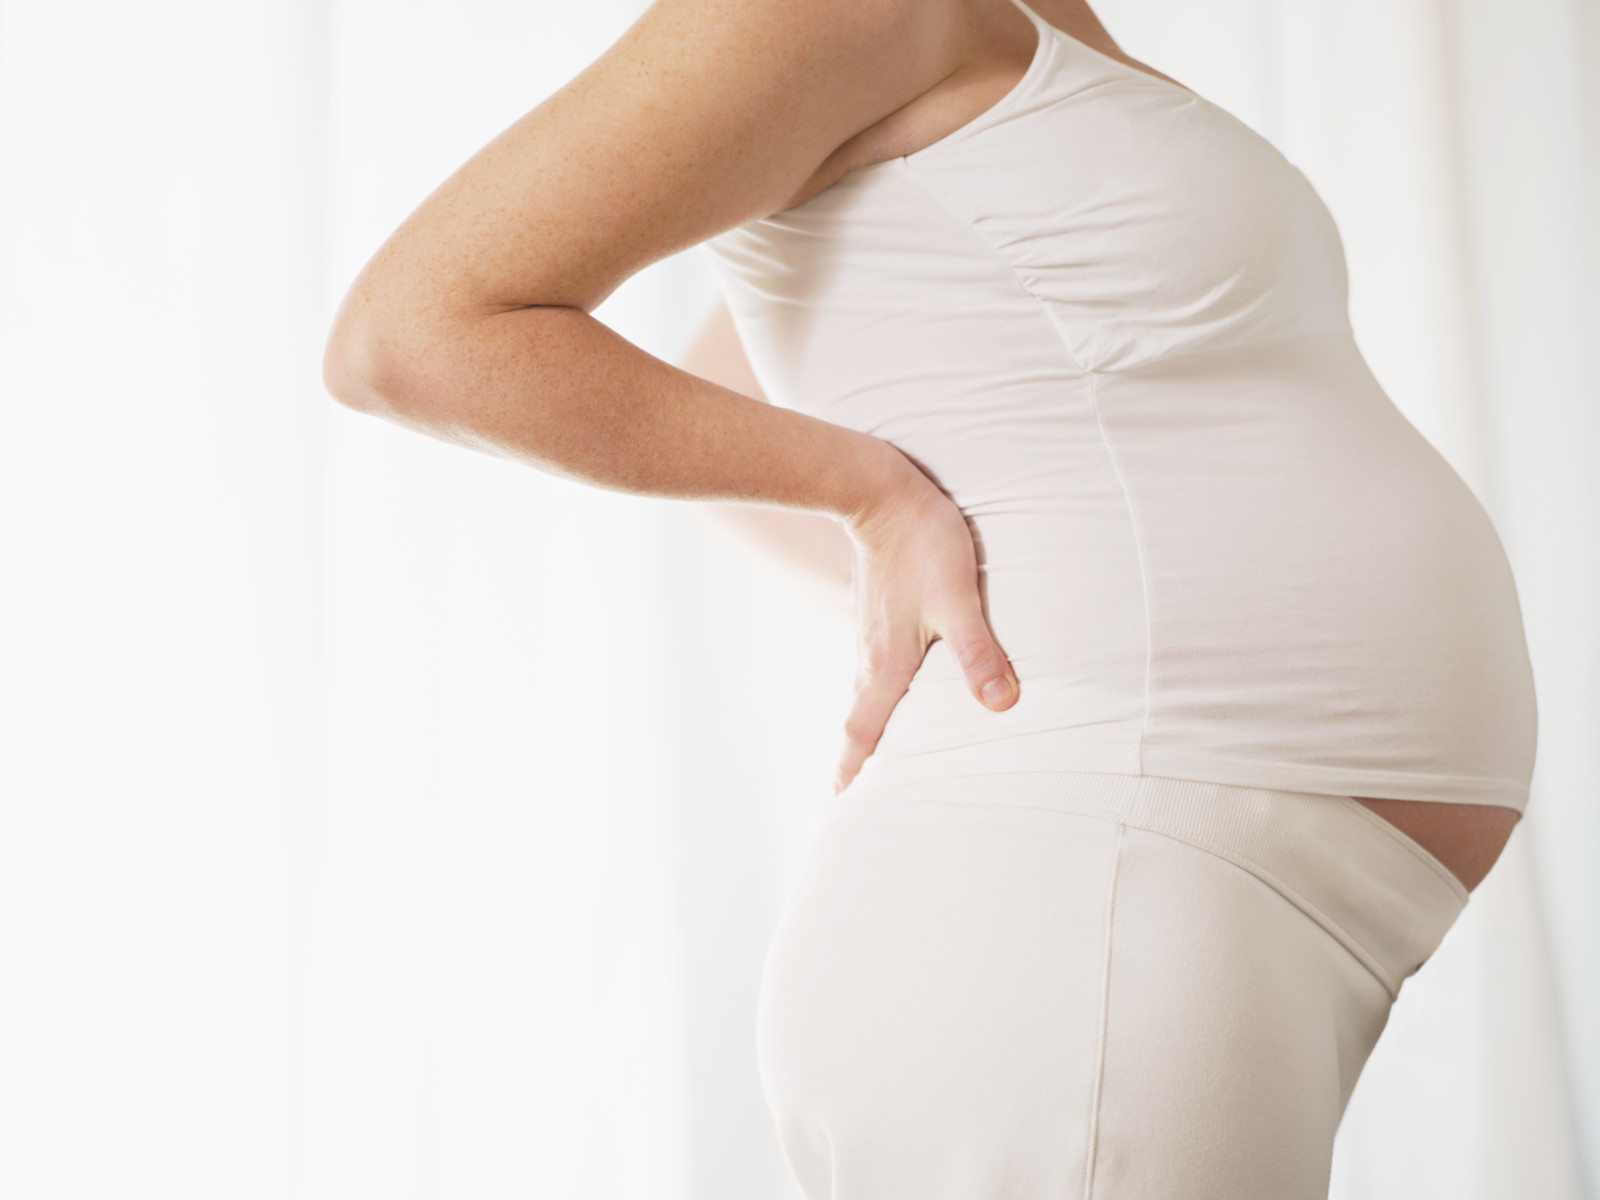 Keine Sprechstunde in der Schwangerschaft: Was sind Ihre Erfahrungen mit einem Beschäftigungsverbot?